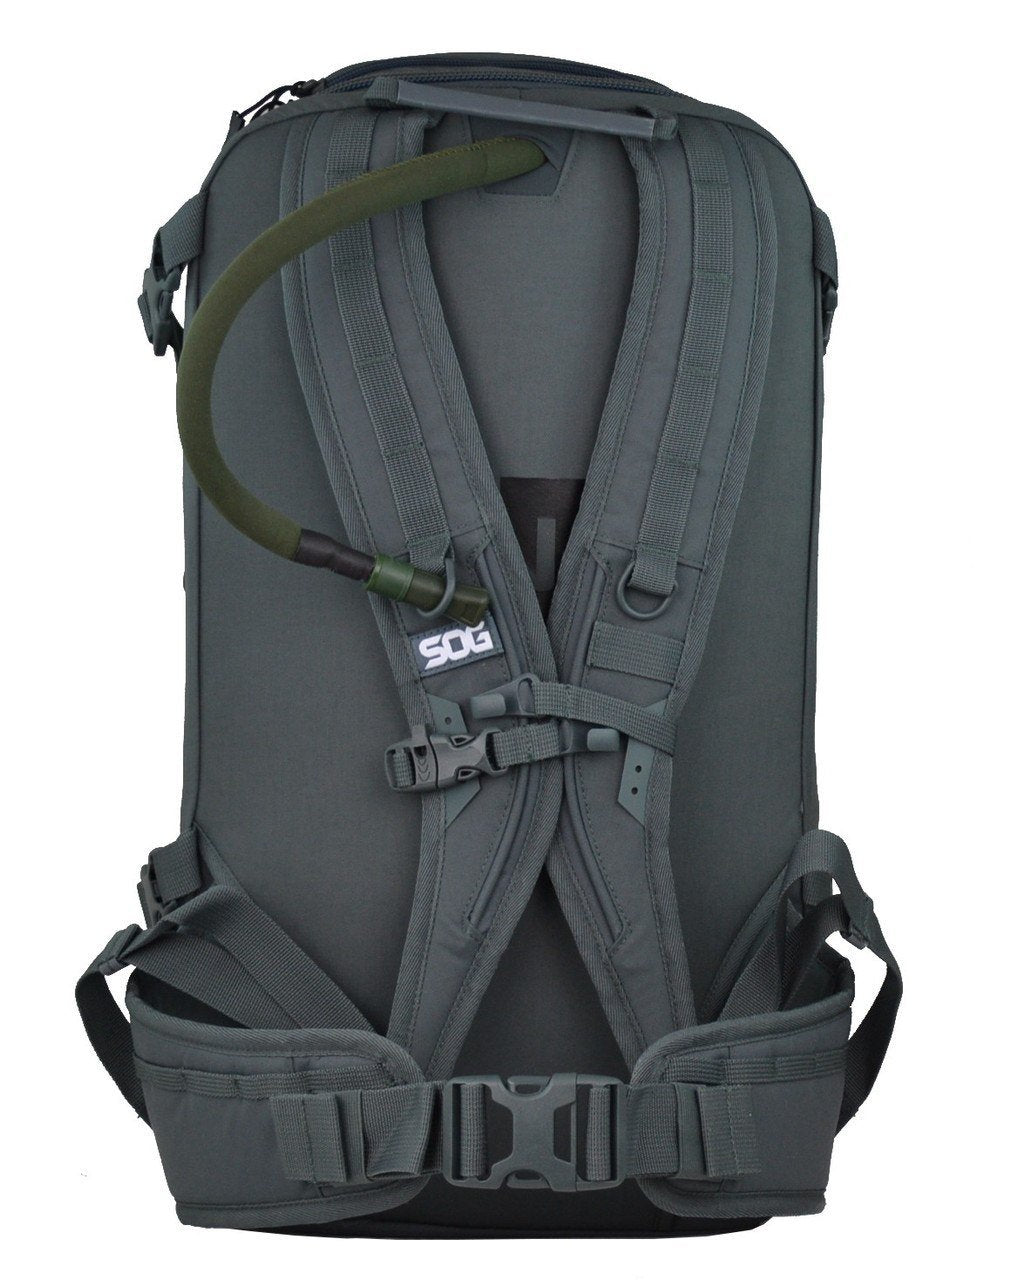 Echo-Sigma Get Home Bag: SOG Special Edition V2